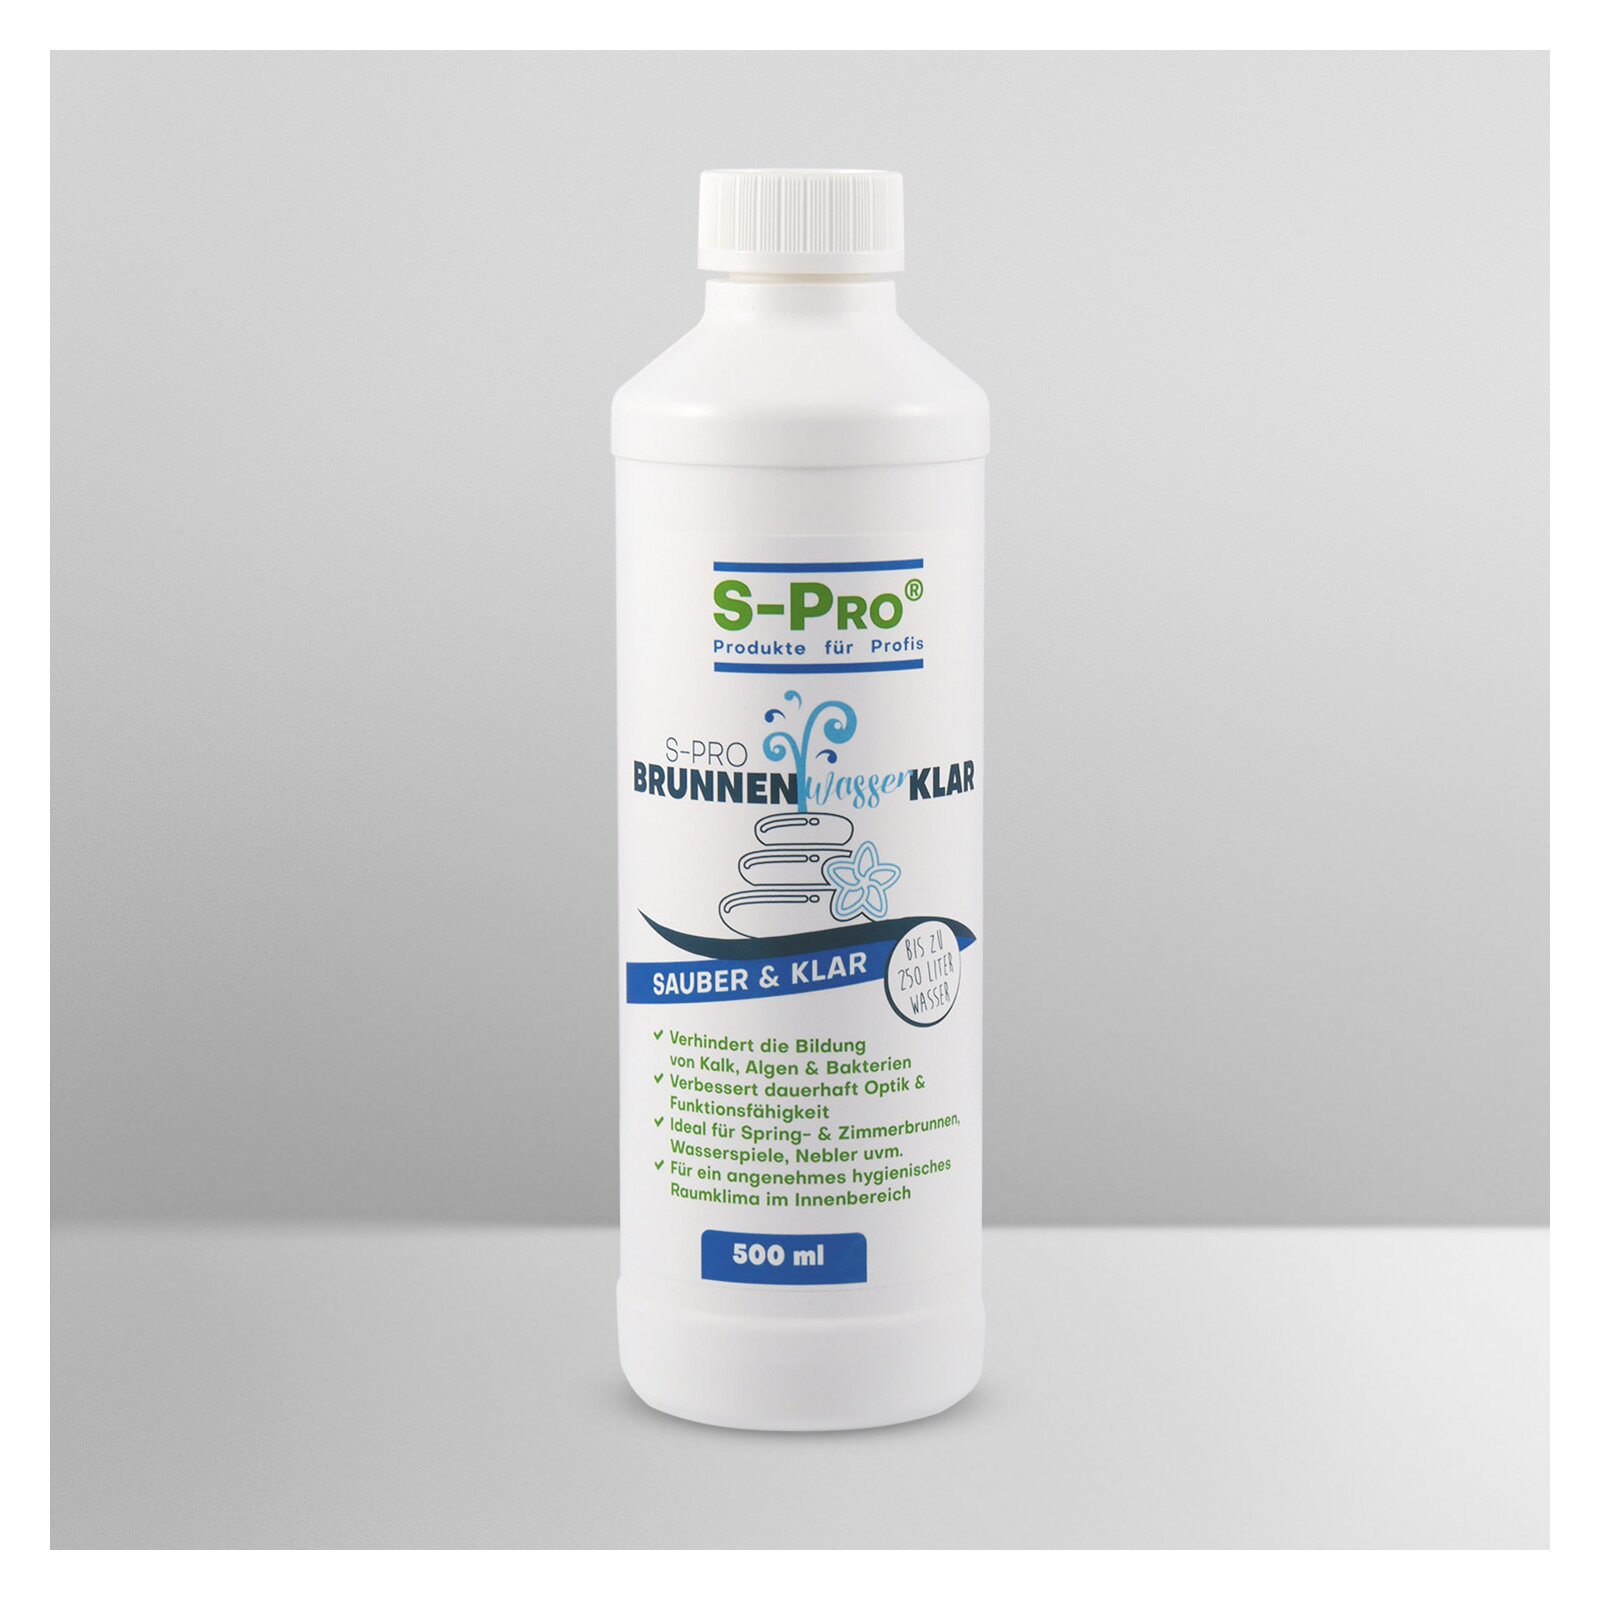 S-Pro® BrunnenwasserKlar